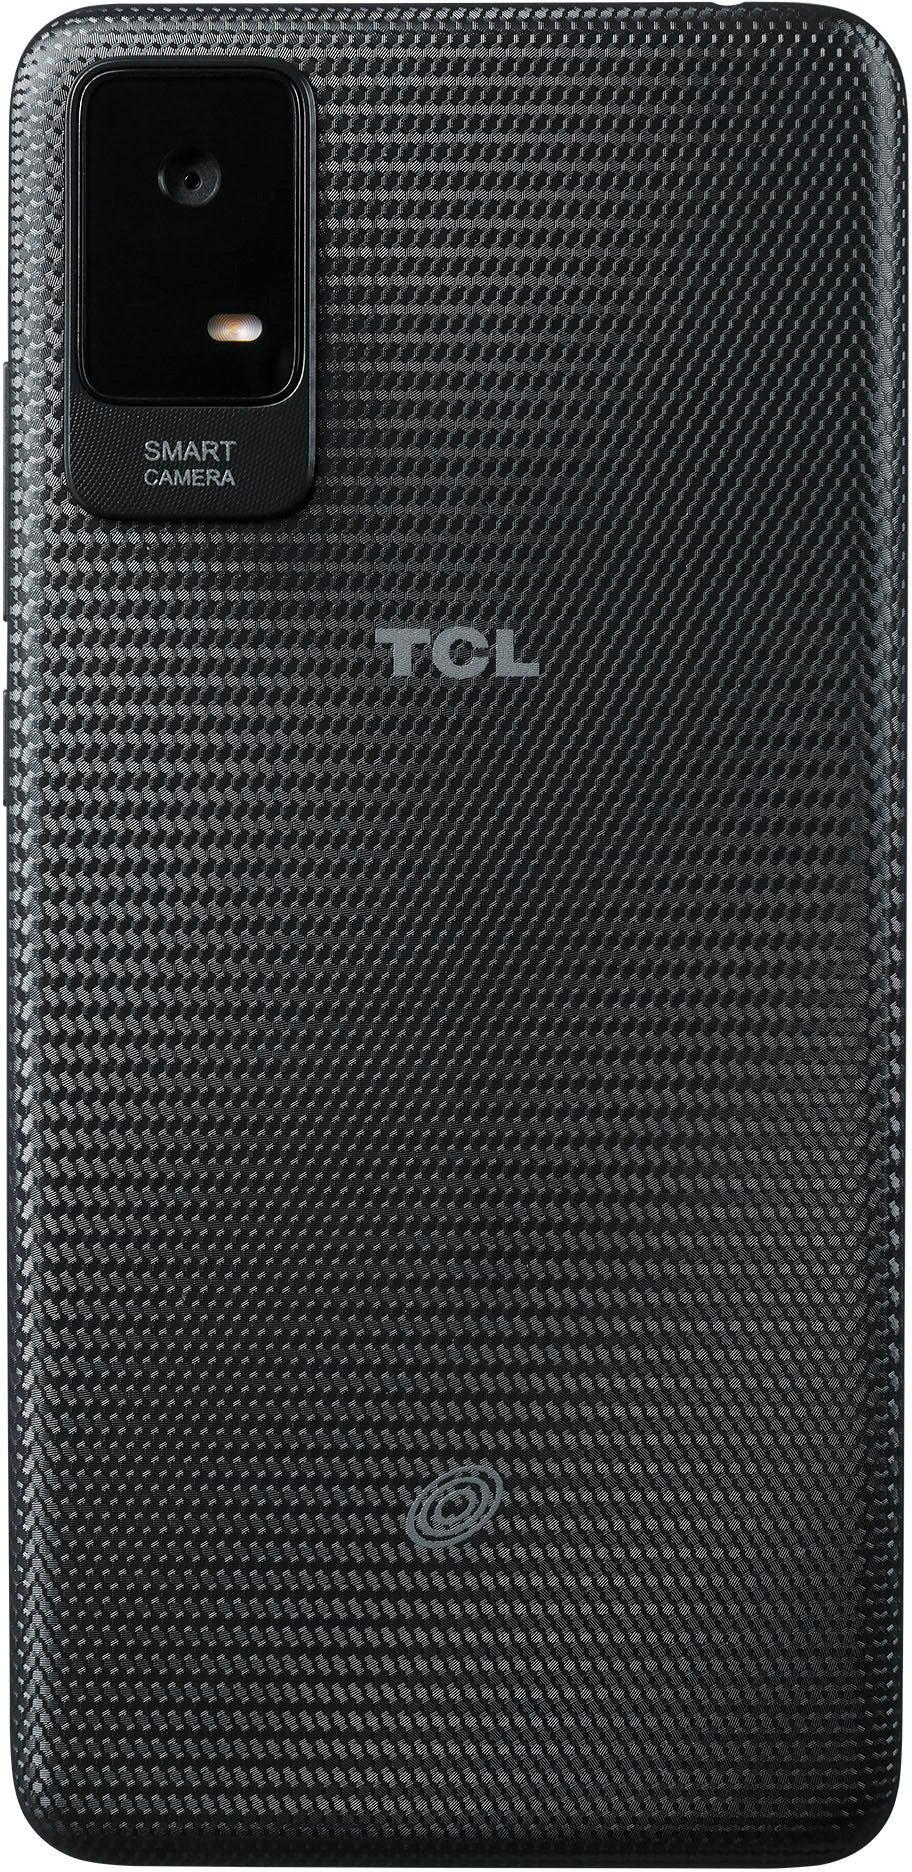 Total by Verizon - TCL ION V T607DL 32GB Prepaid - Black_3